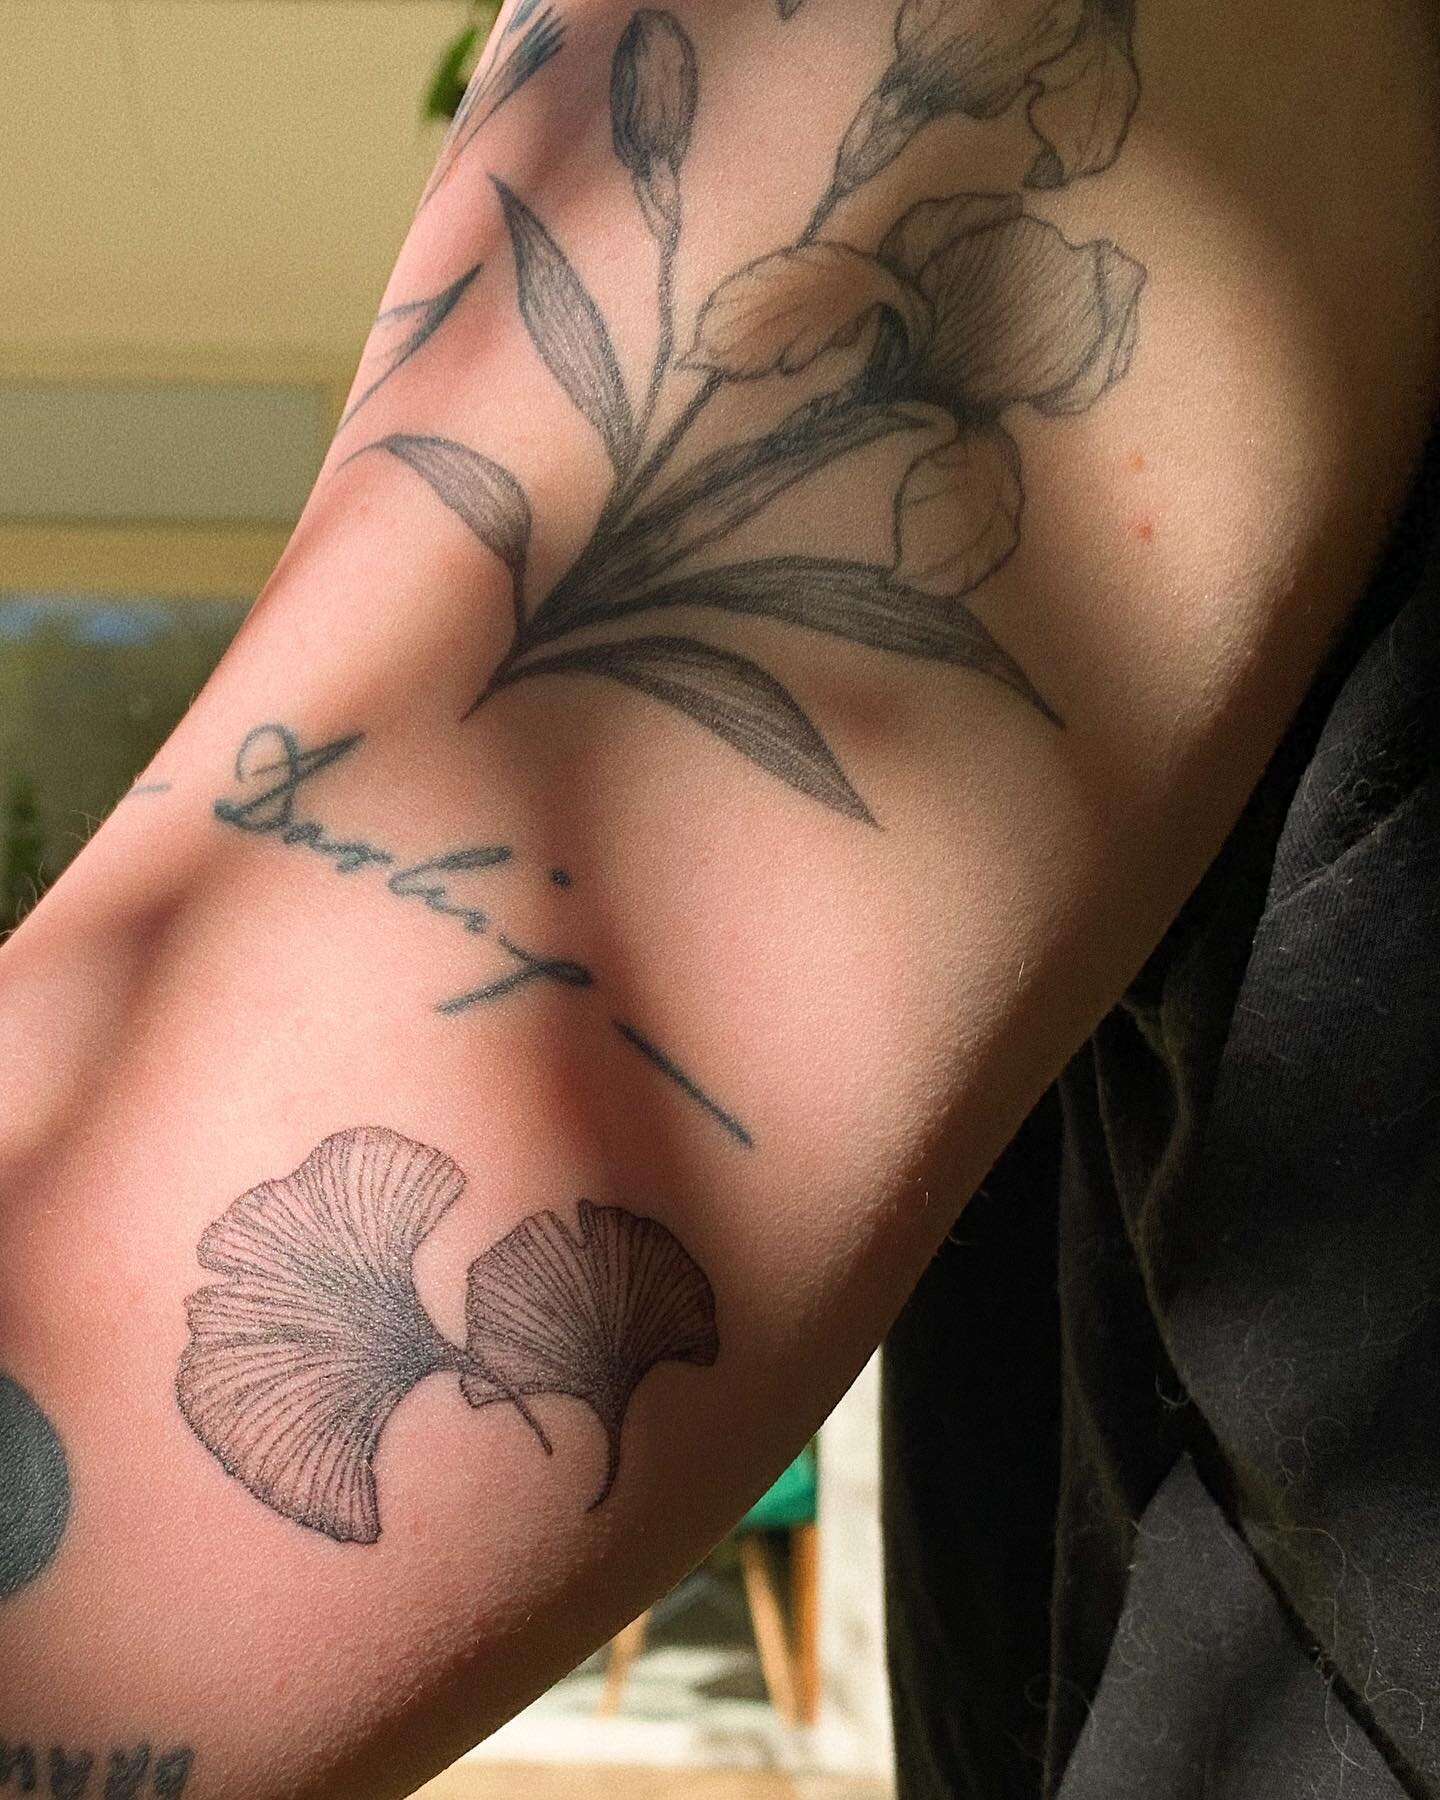 Ginkos cicatrizados h&aacute; duas semanas e flores de Iris h&aacute; um ano e tr&ecirc;s meses. Feitos por mim mesma &hearts;️ 
.
.
.
#ttt #ginko #irisflower #botanicaltattoo #tattoosp #autotattoo #tattooist #flowertattoo #healed #tatuadora #tattood